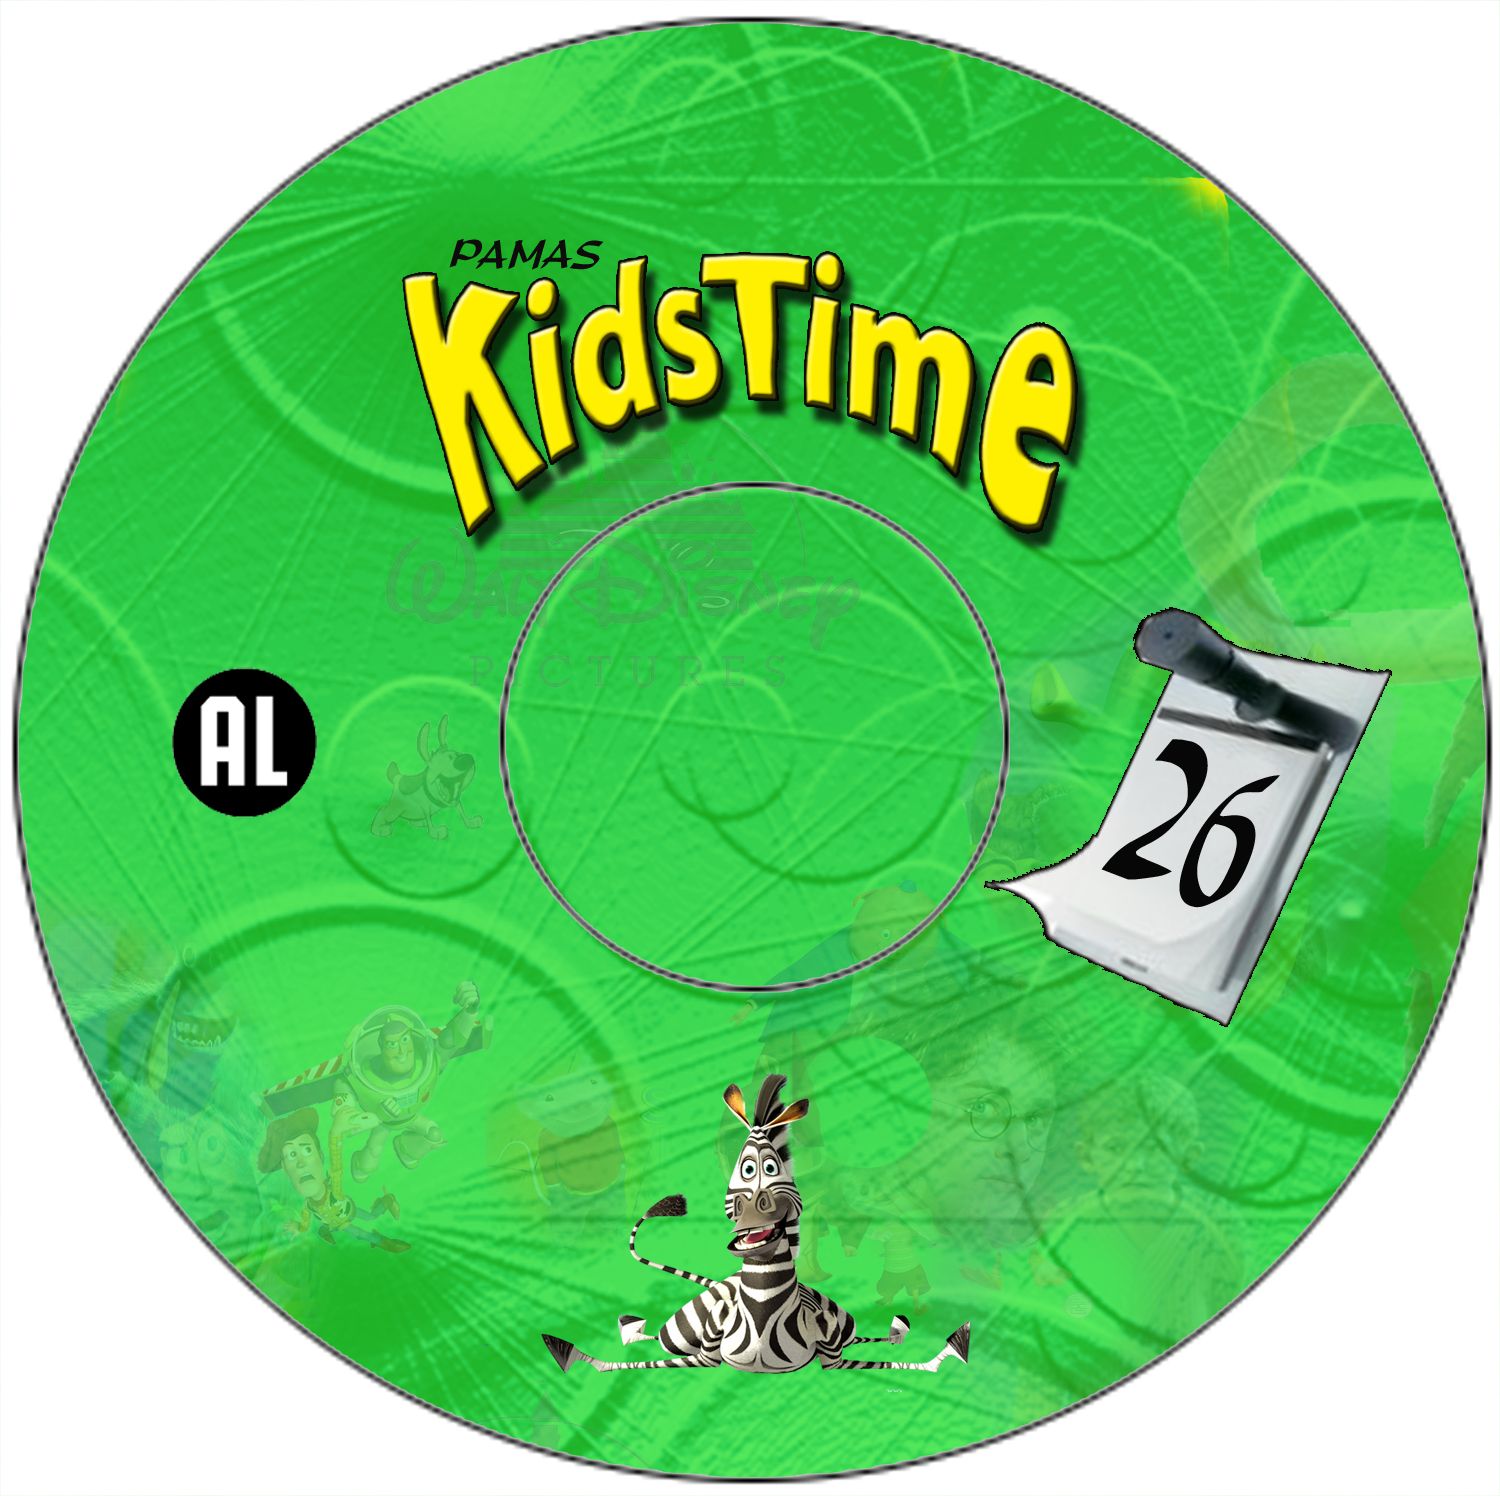 Pamas Kidstime Vol. 26 DVD CD